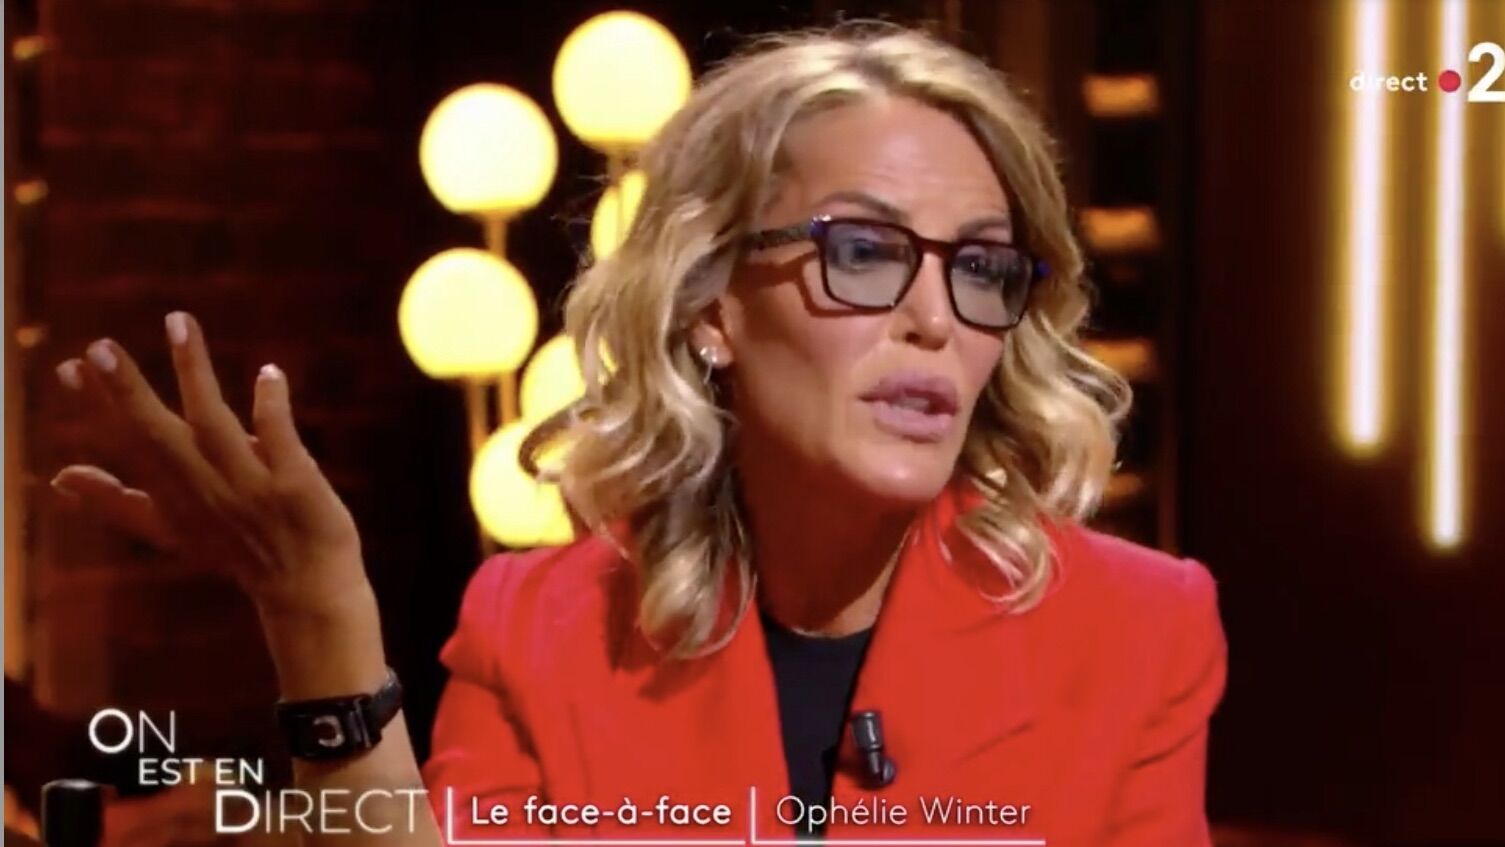  Ophélie Winter dévoile sa vie dans l'émission "On est en direct" @ France2